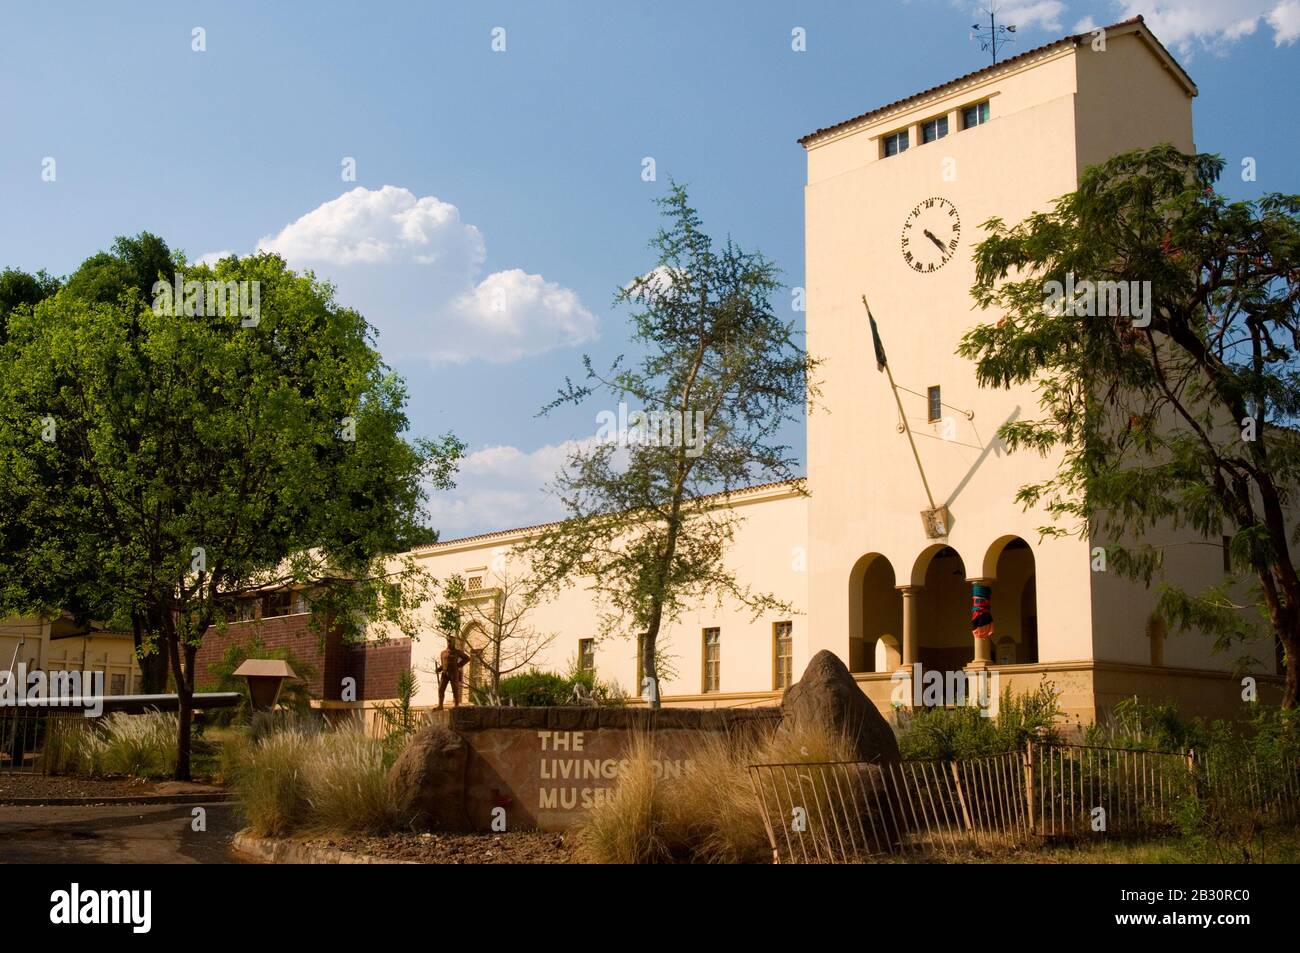 Das Livingstone Museum in Livingstone, in der Nähe der Victoriafälle, ist das größte und älteste in Sambia. Stockfoto